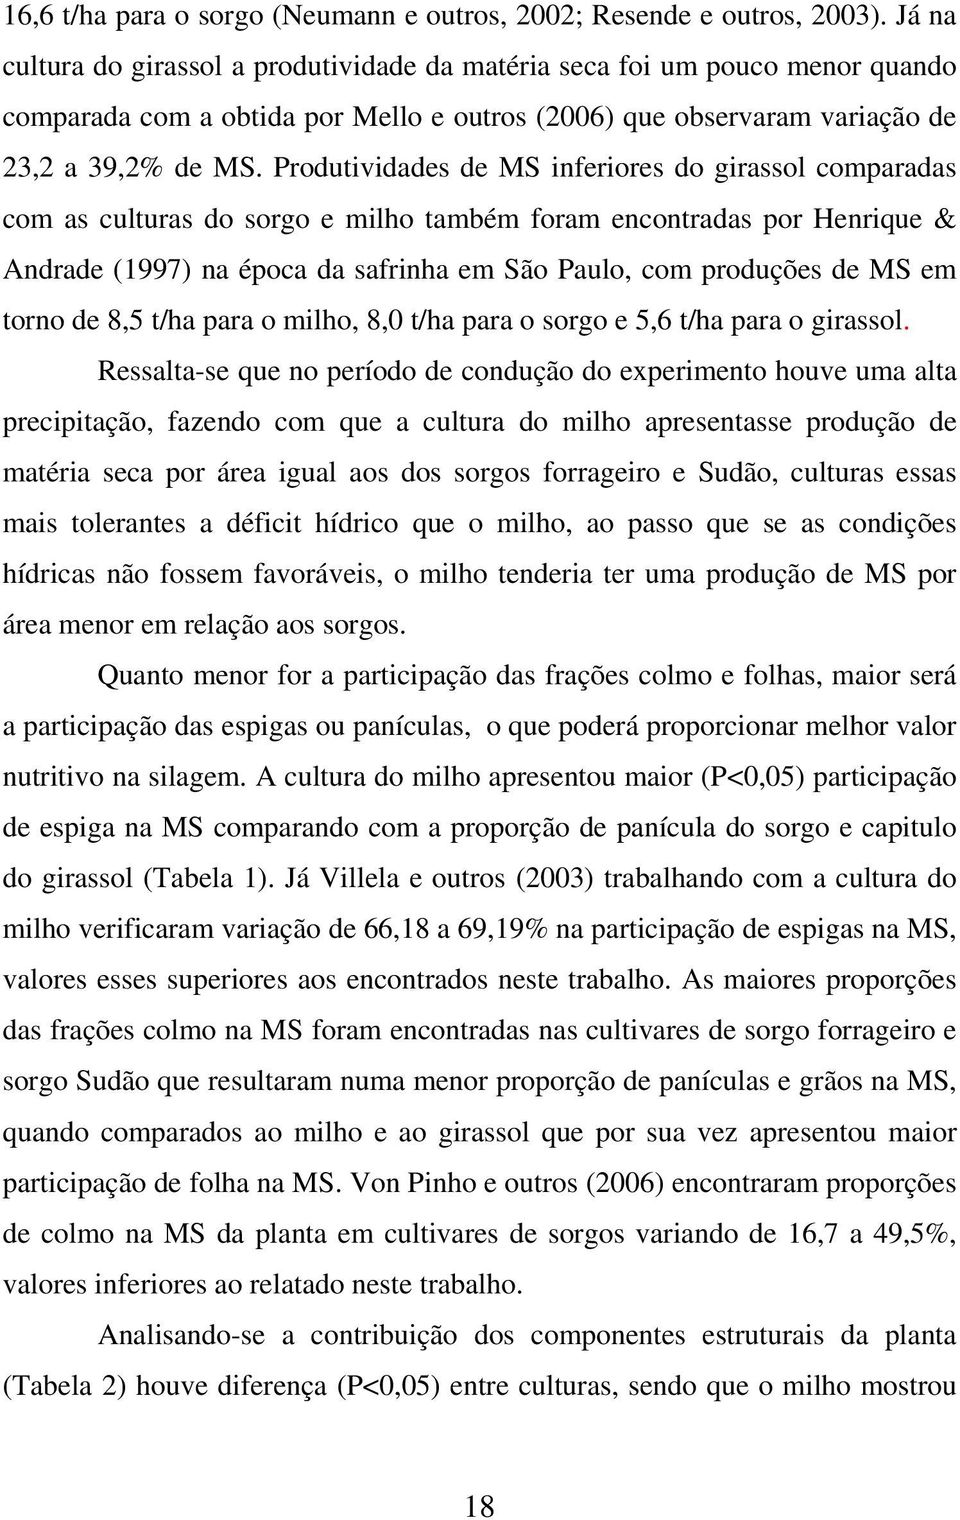 Produtividades de MS inferiores do girassol comparadas com as culturas do sorgo e milho também foram encontradas por Henrique & Andrade (1997) na época da safrinha em São Paulo, com produções de MS